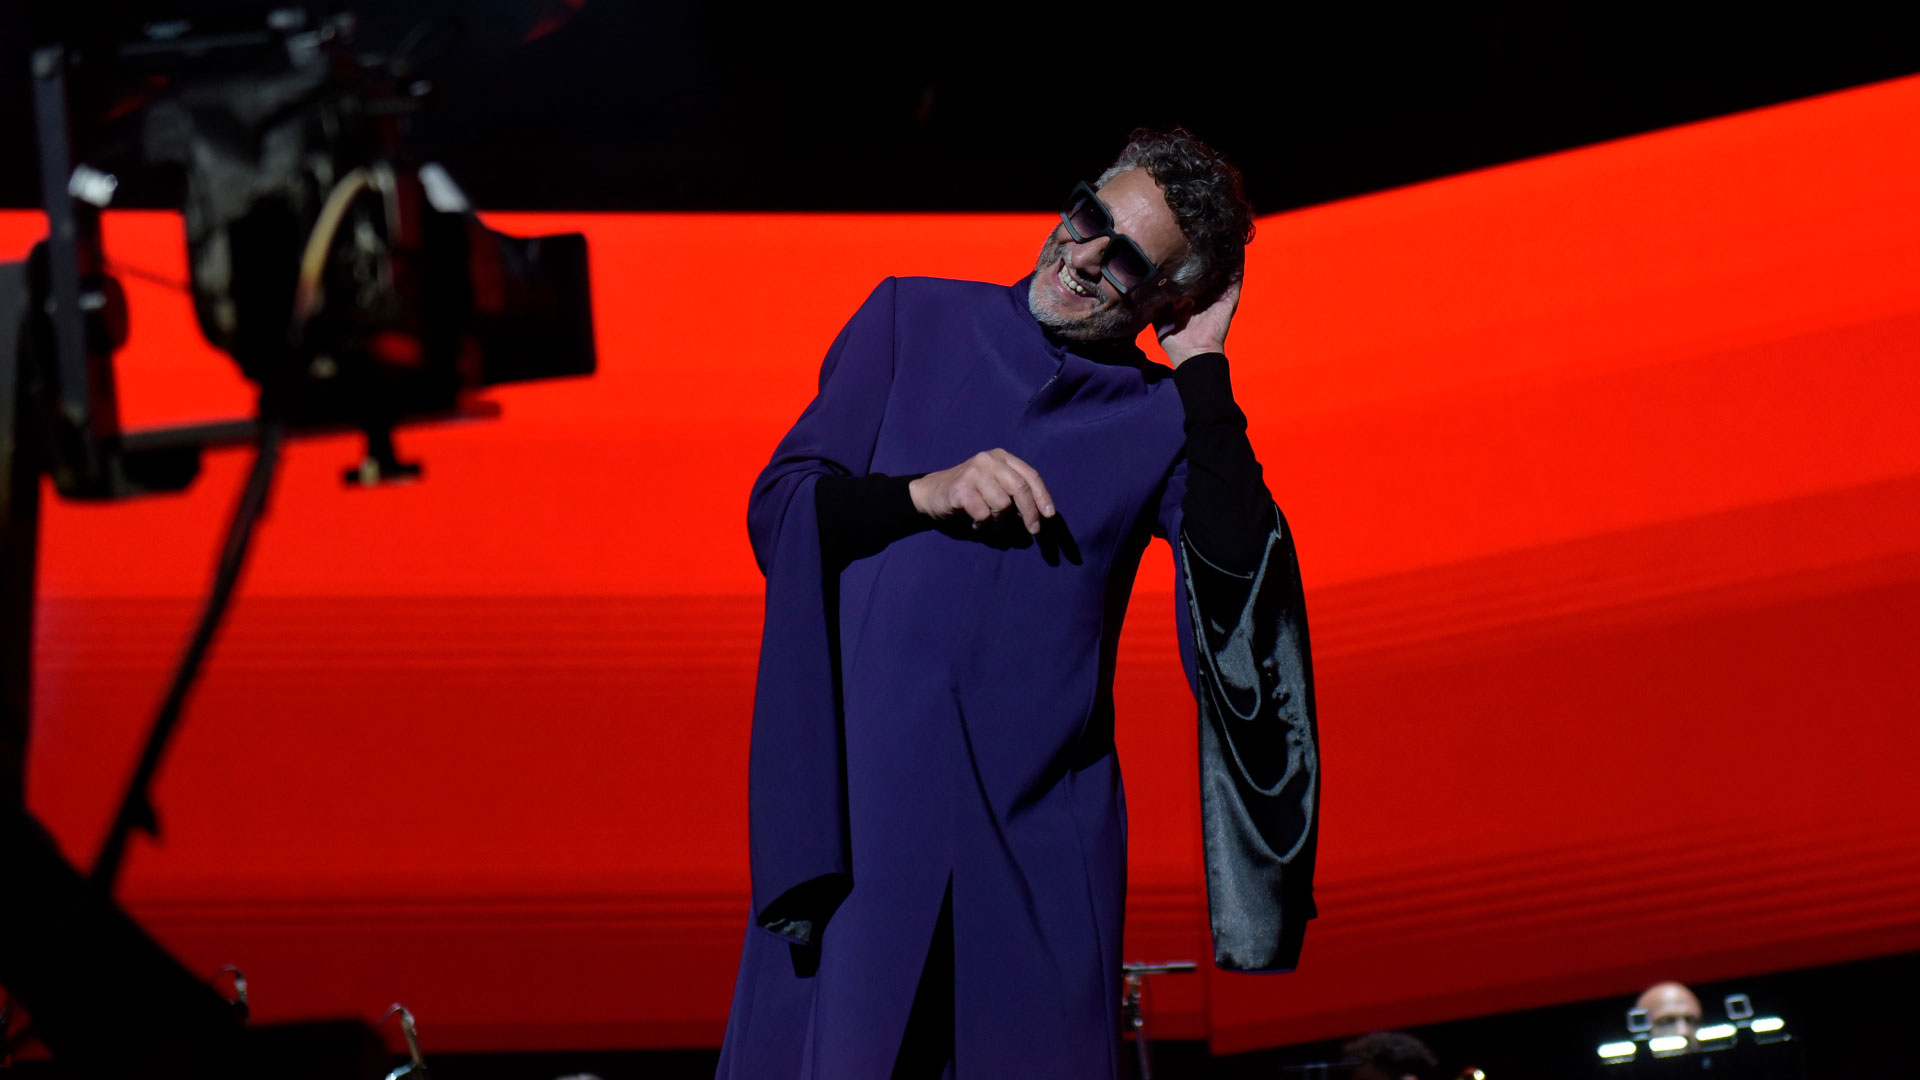 Con una túnica violeta y negra, el compositor hizo delirar a un público que fue a conectarse con su música (Foto: Gustavo Gavotti)